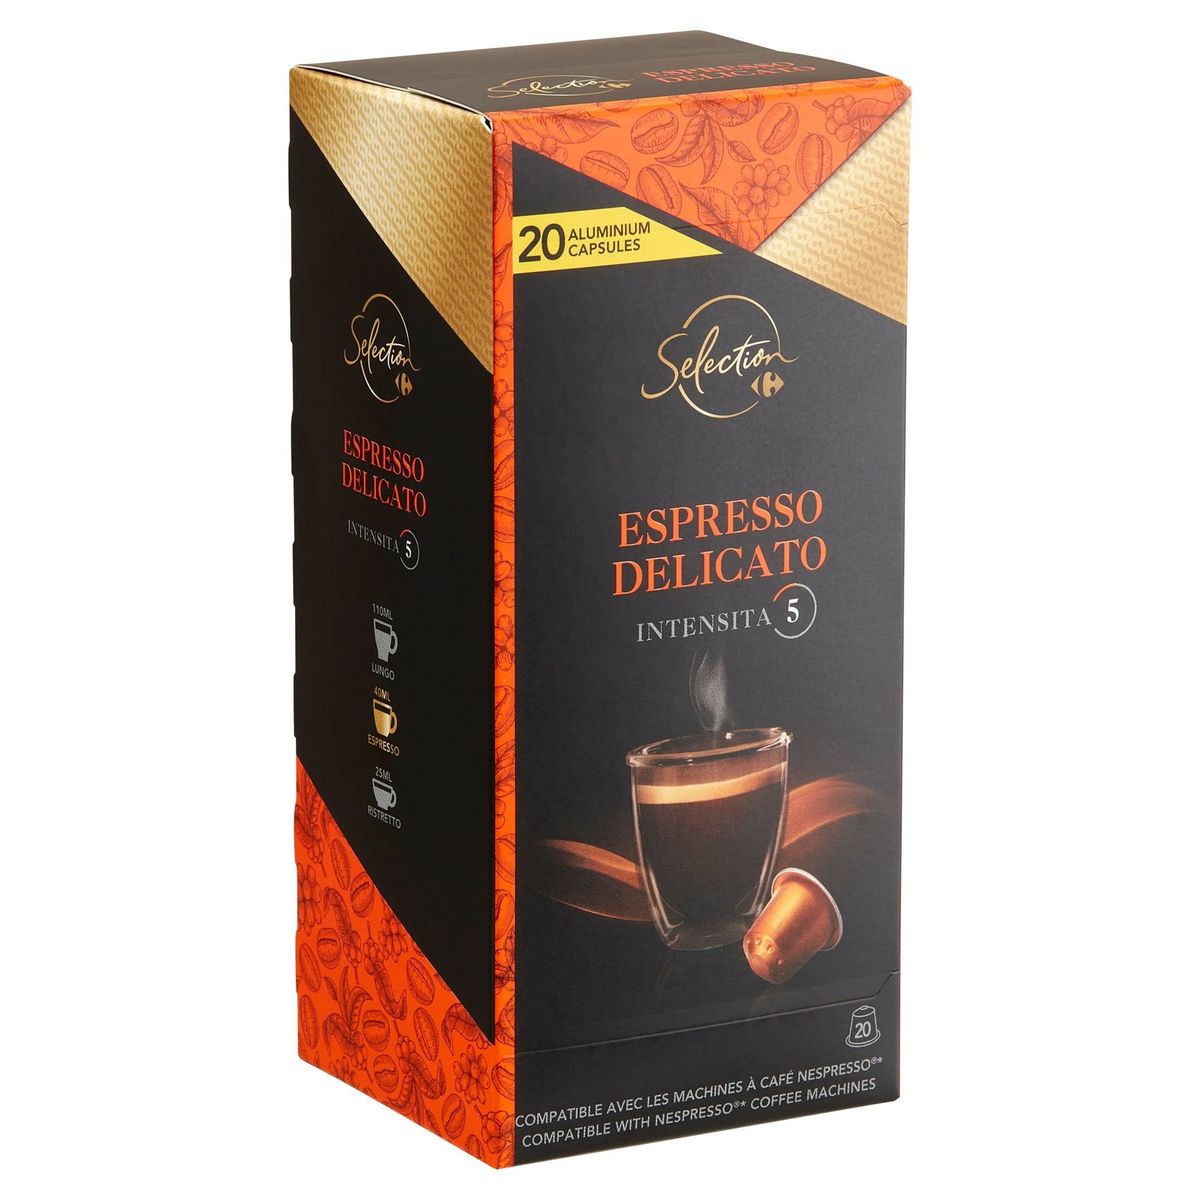 Carrefour Selection Espresso Delicato 20 Capsules 104 g